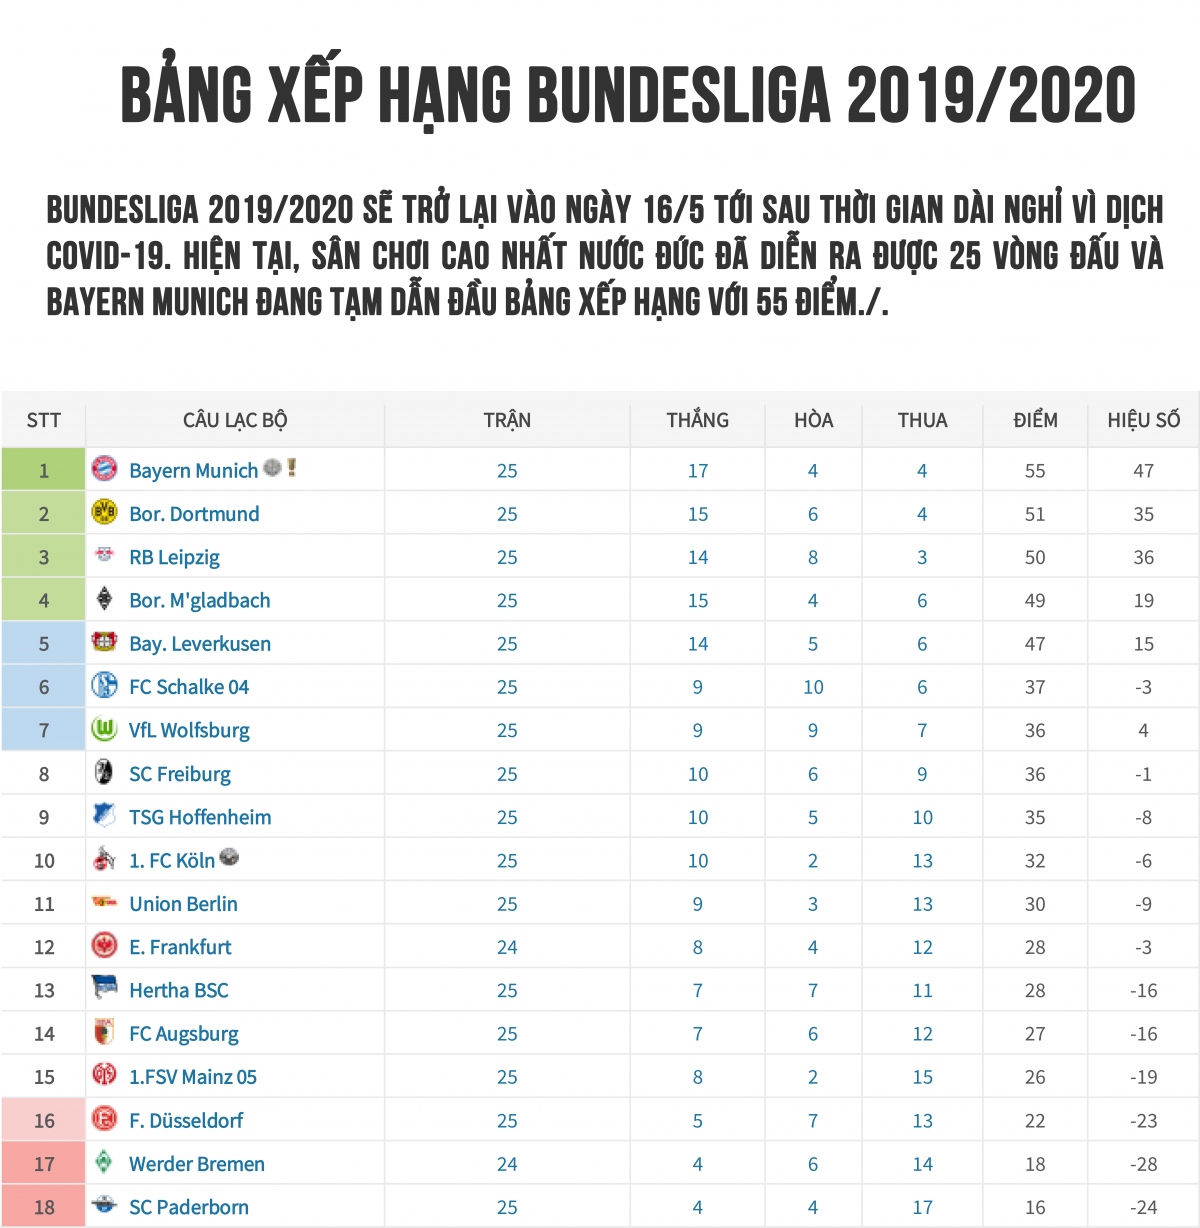 Bang xep hang Bundesliga.jpg